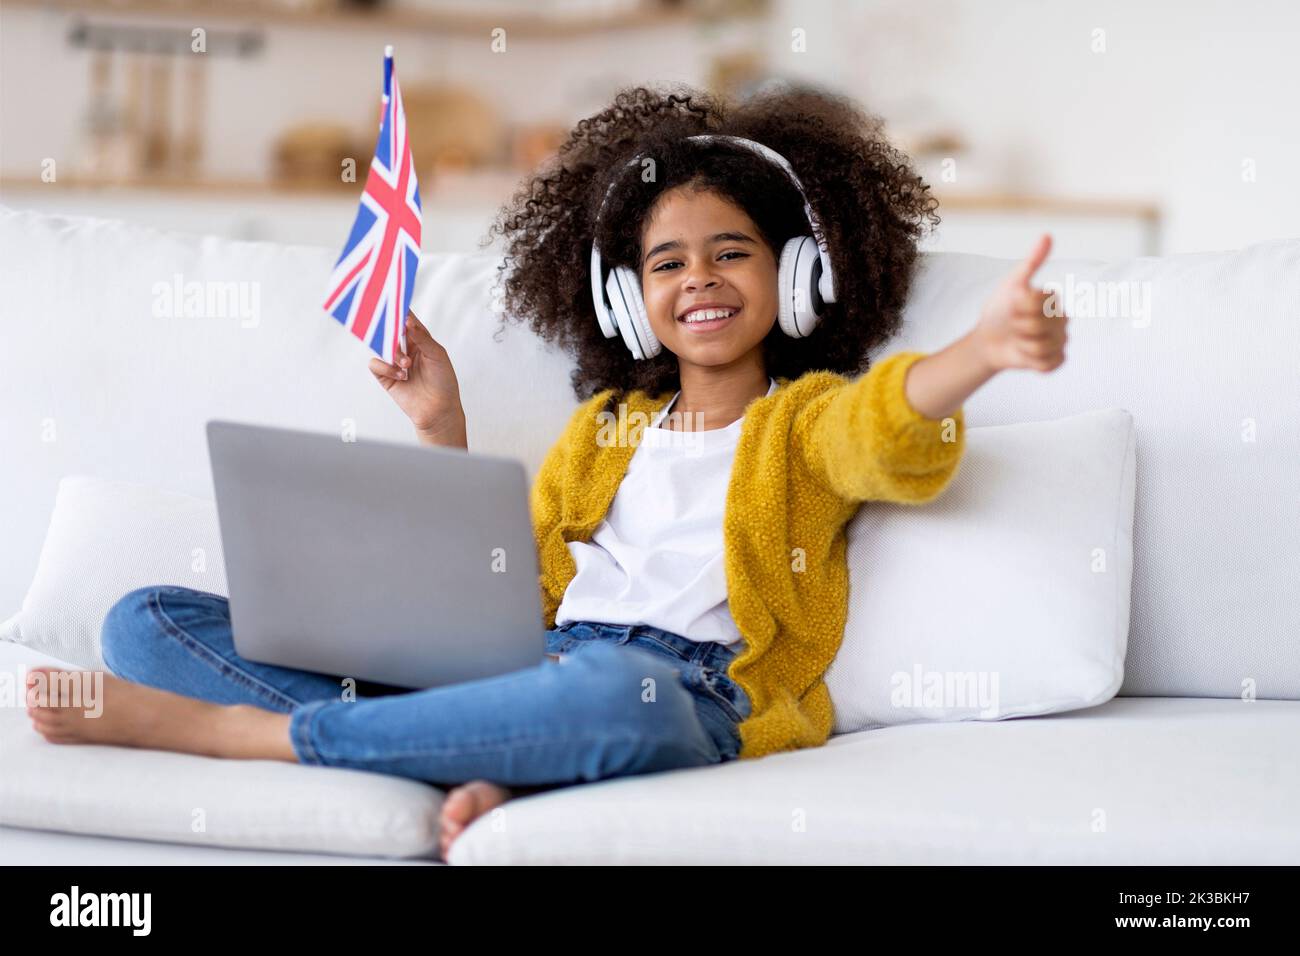 Ragazza nera felice con computer in giro che mostra la bandiera del Regno Unito Foto Stock